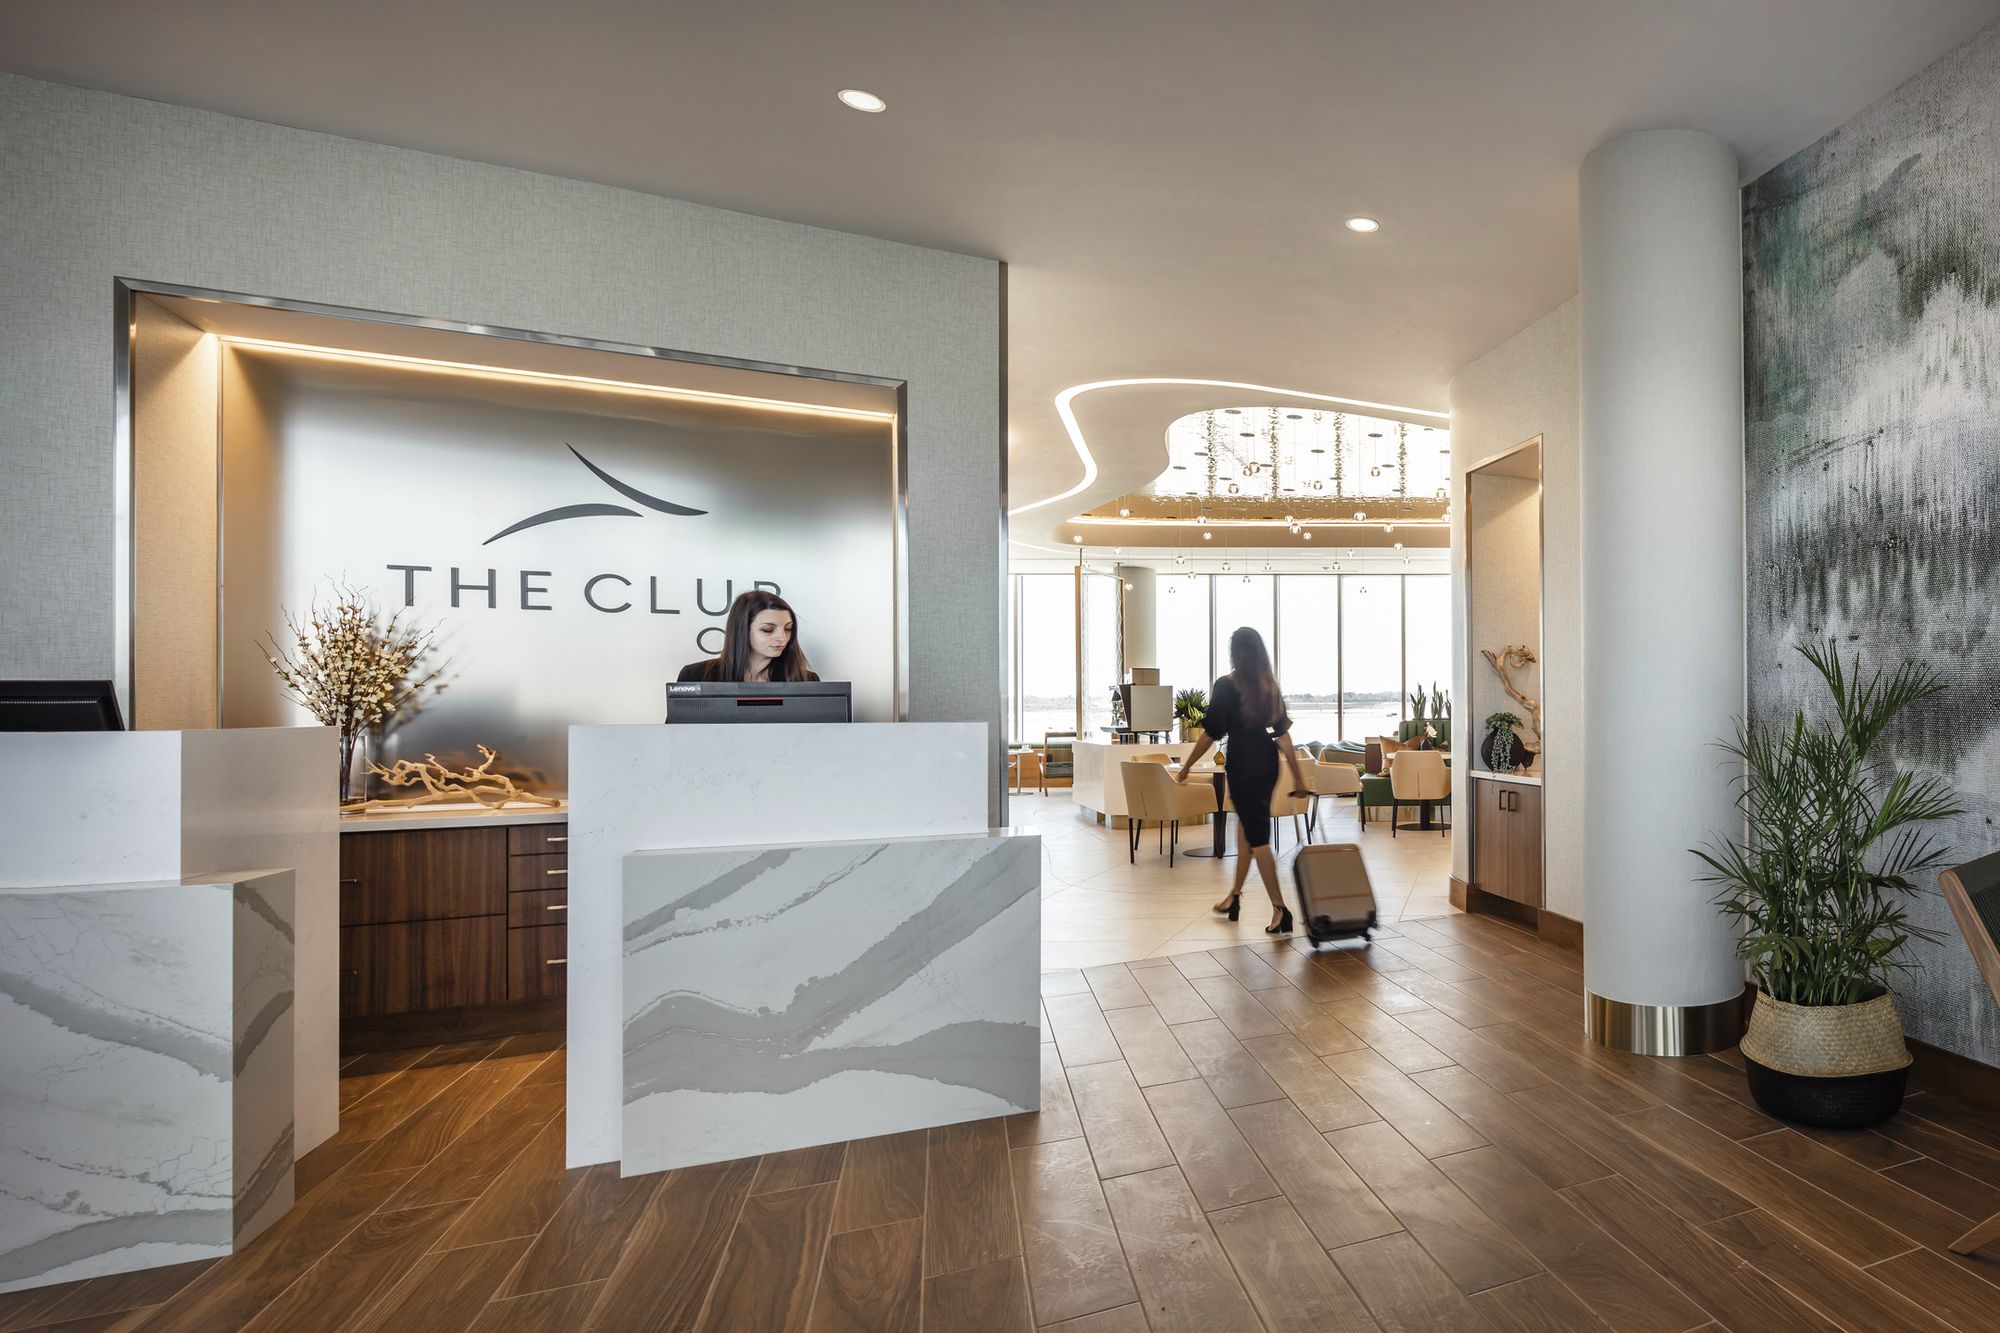 夏洛特道格拉斯国际机场CLT俱乐部|ART-Arrakis | 建筑室内设计的创新与灵感